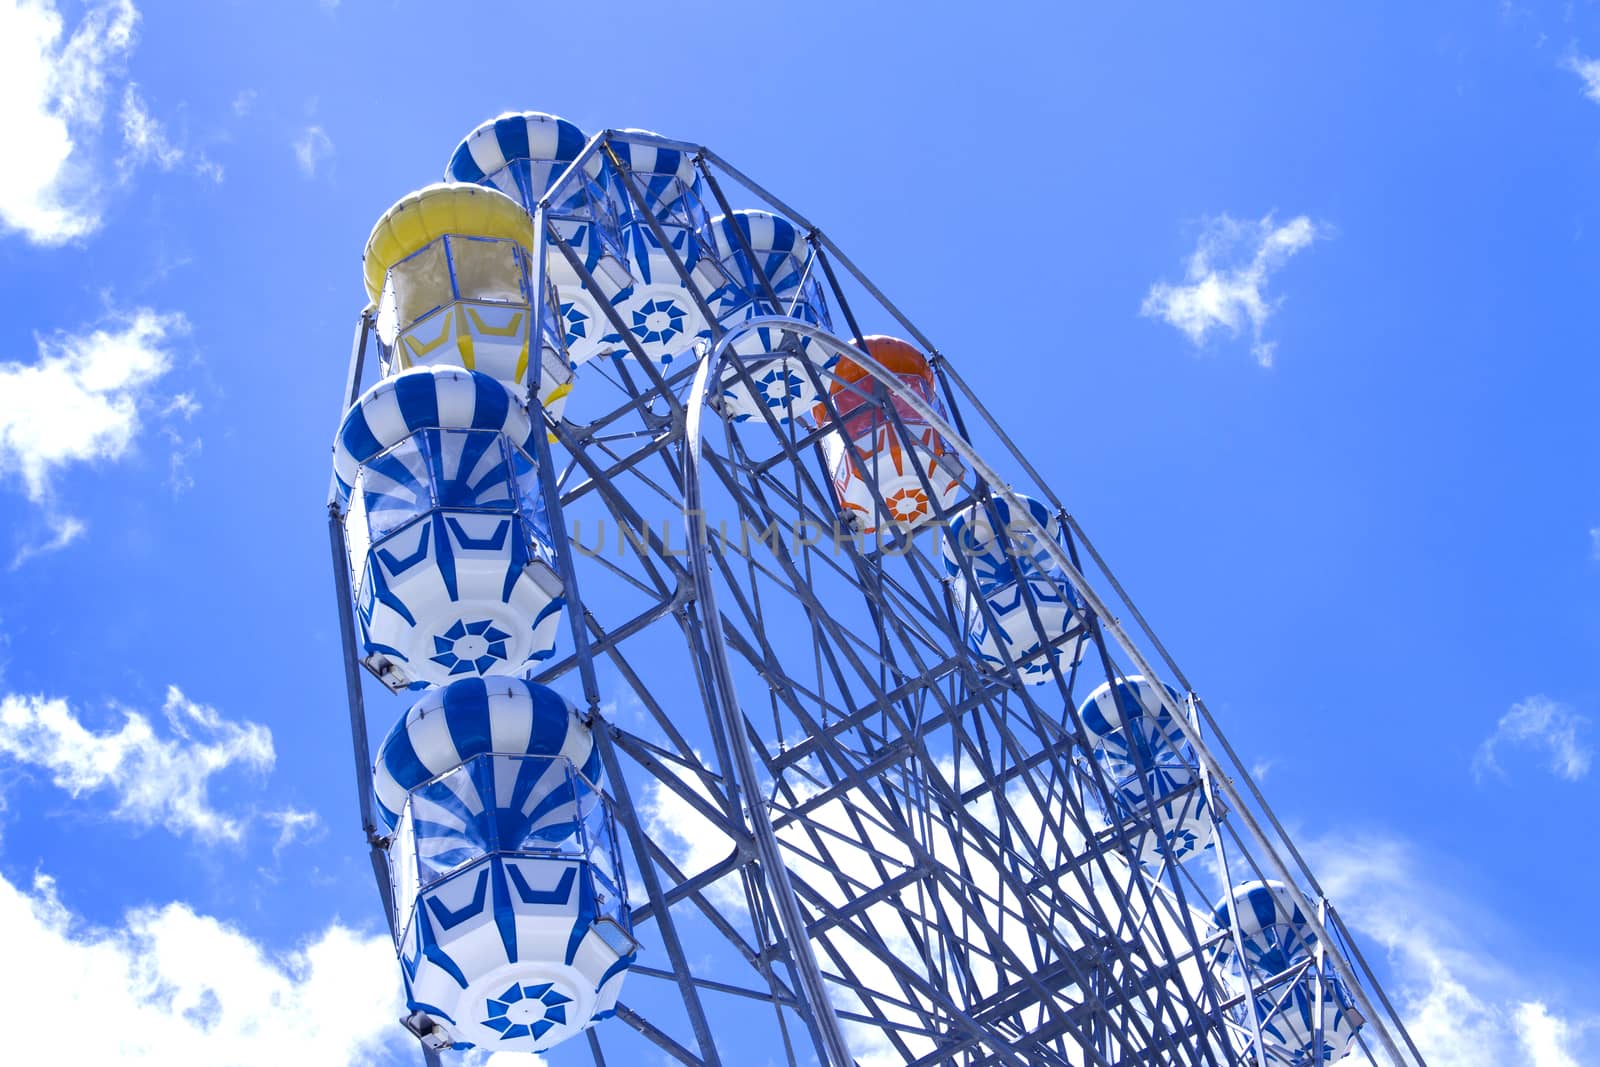 amusement park by jee1999